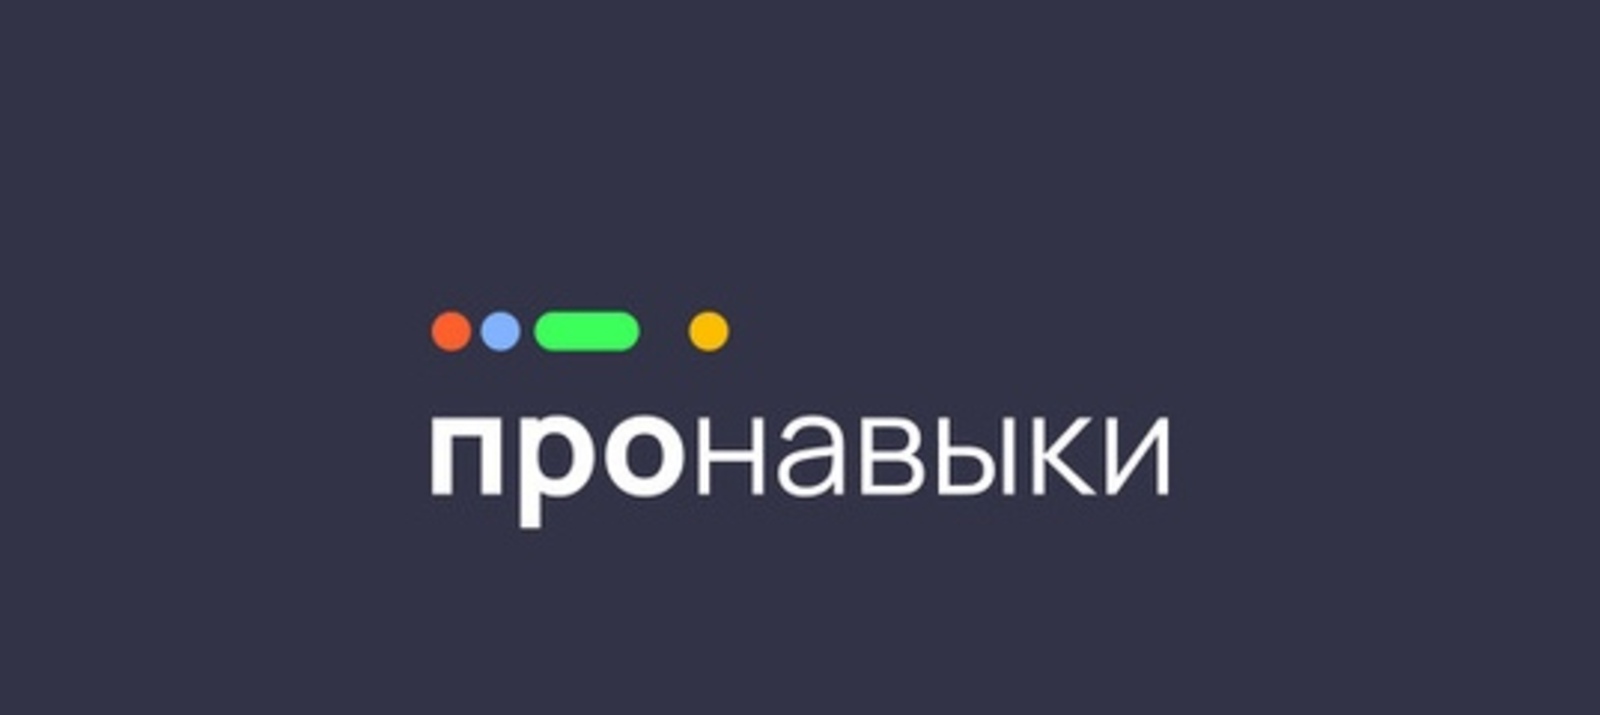 Жителей Башкортостан приглашают принять участие в социальной инициативе «ПРОНАВЫКИ.РФ»